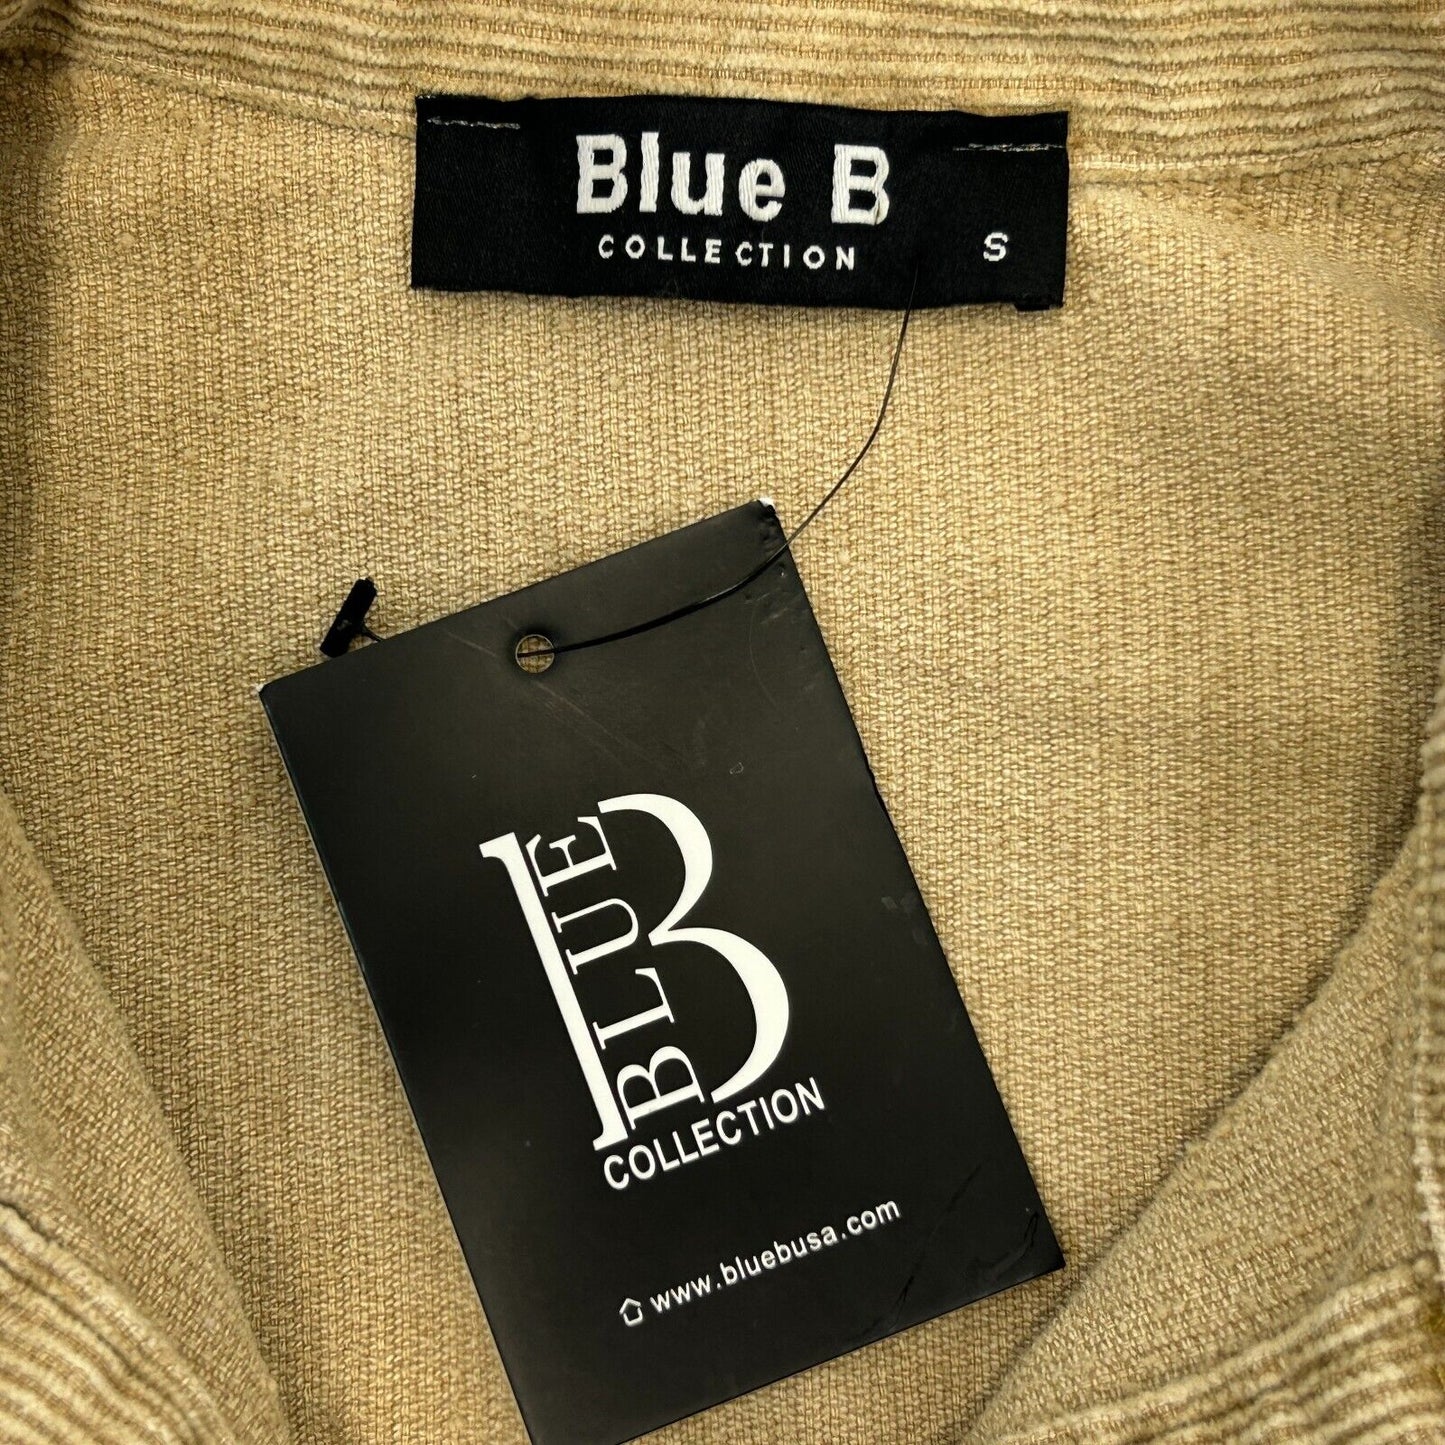 Blue B Collection - Chaqueta camisera de pana para mujer, color beige, contraste pequeño, nuevo